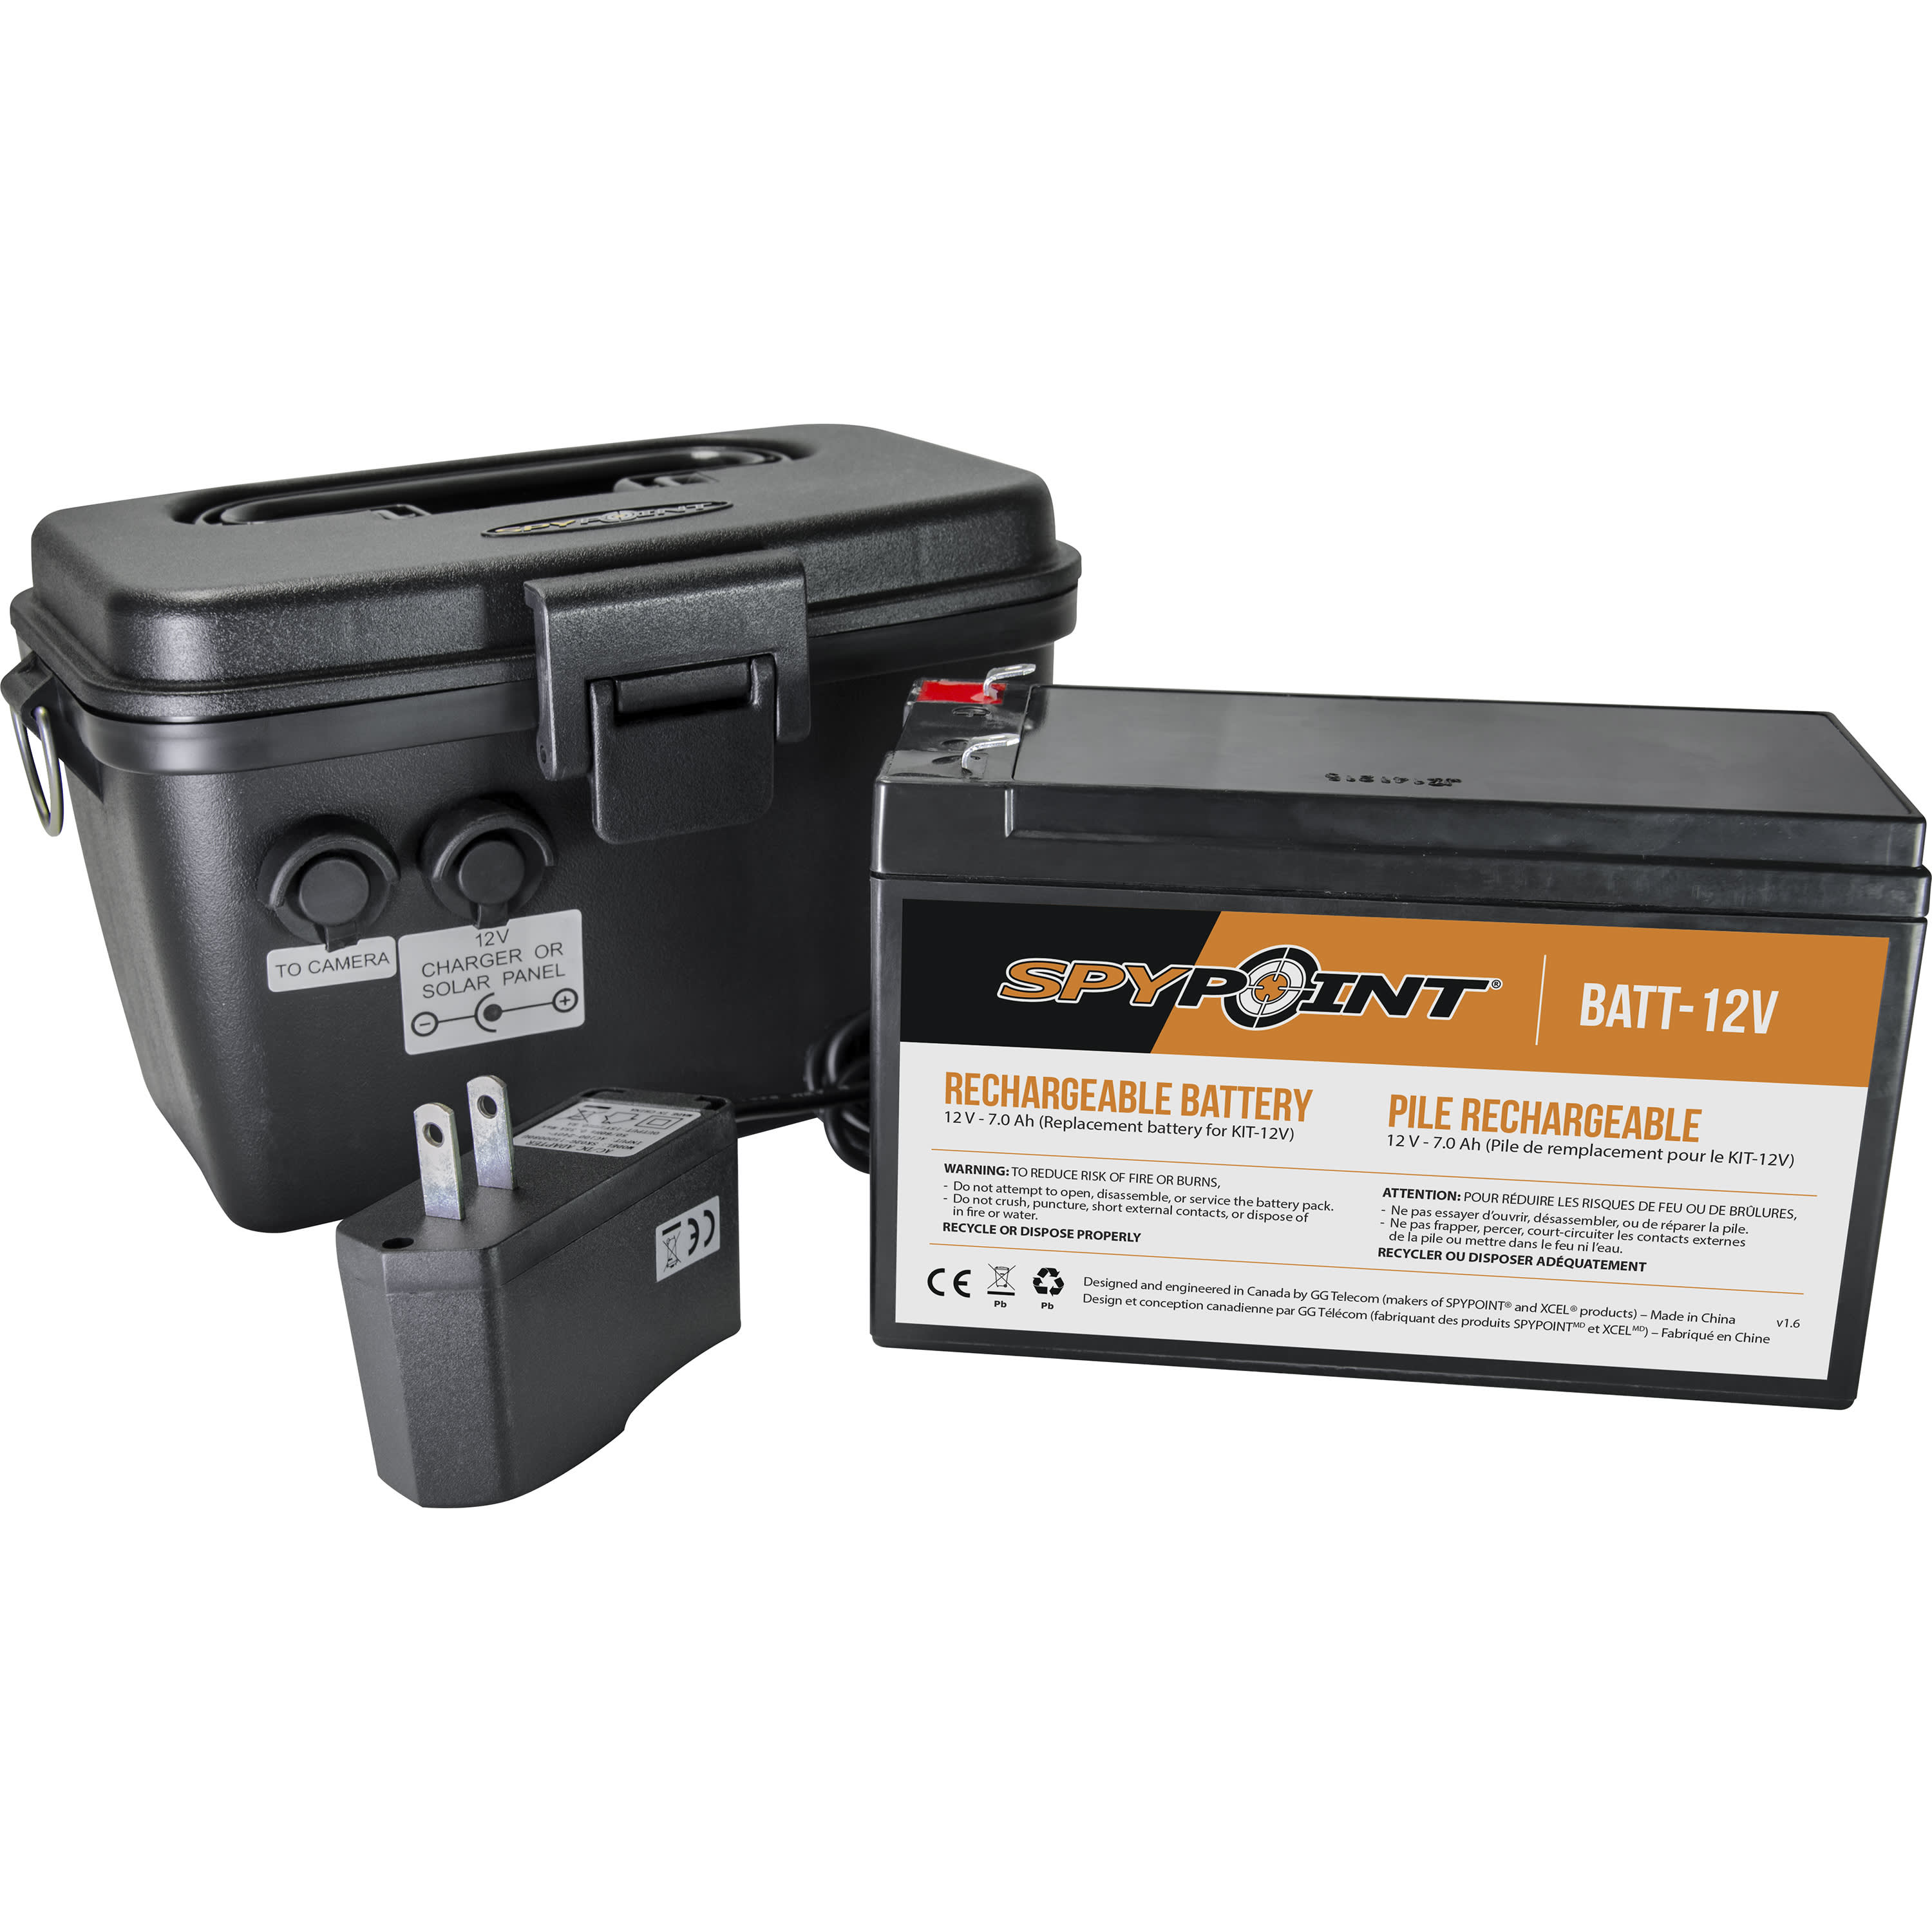 SPYPOINT® 12V Power Supply Kit